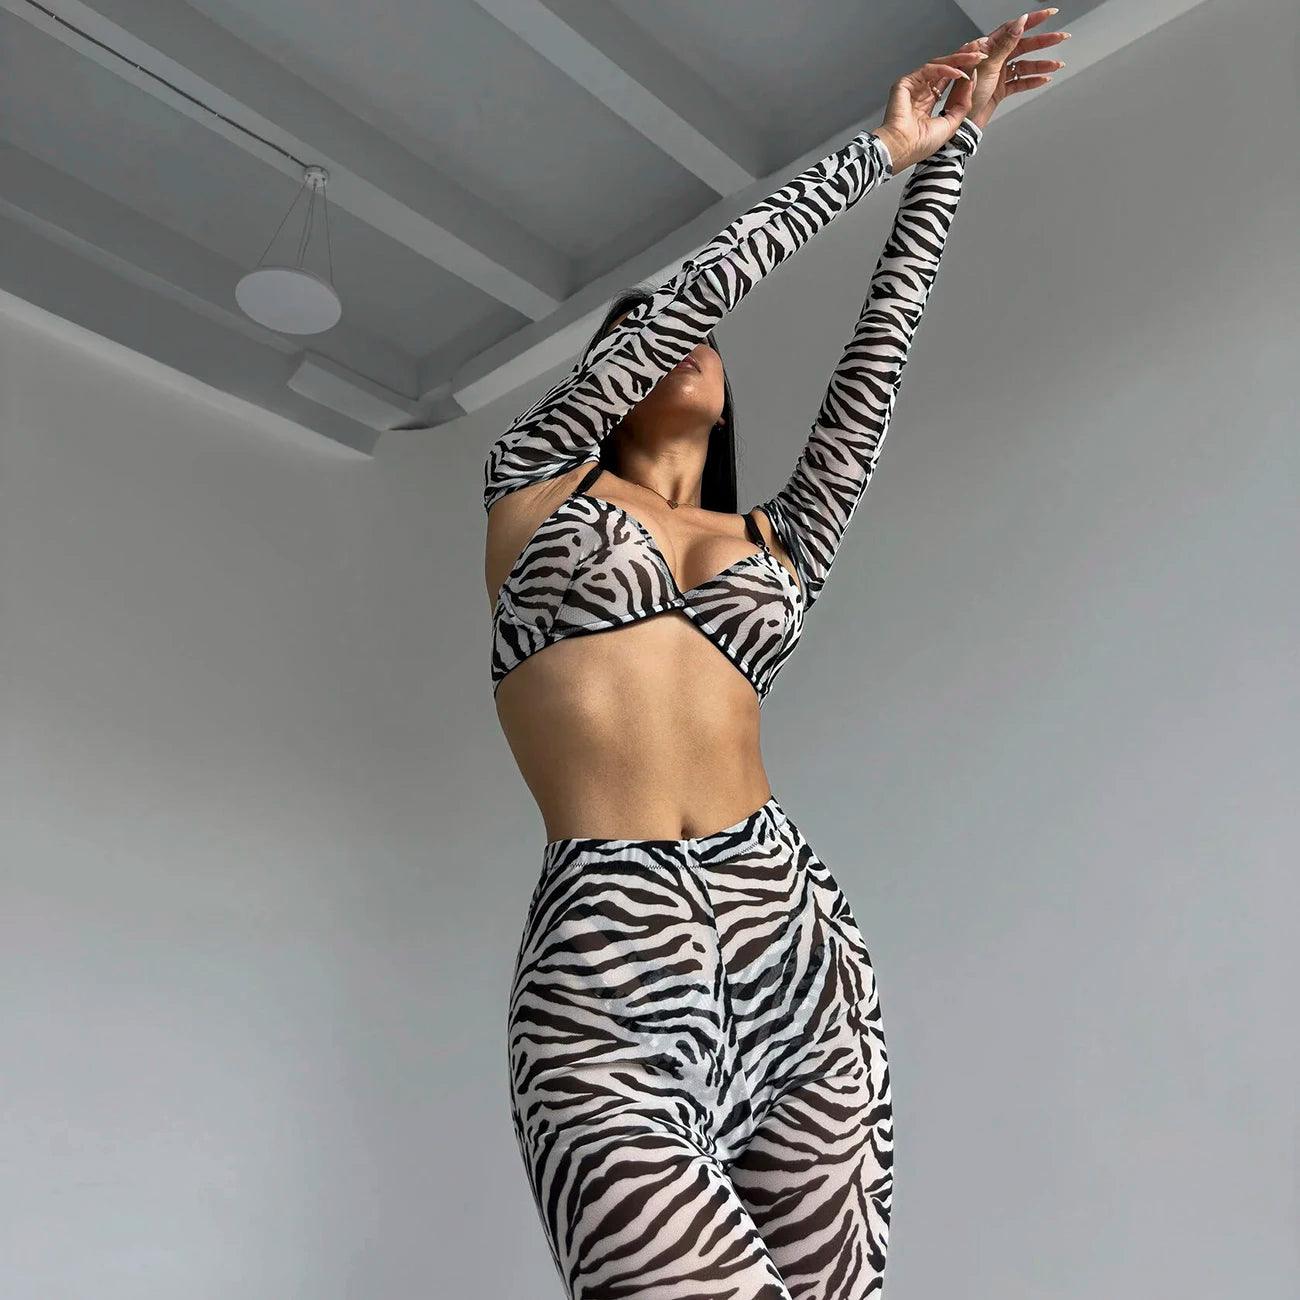 Zebra Erotiska Underkläder för Sensuella Stunder - WIQ